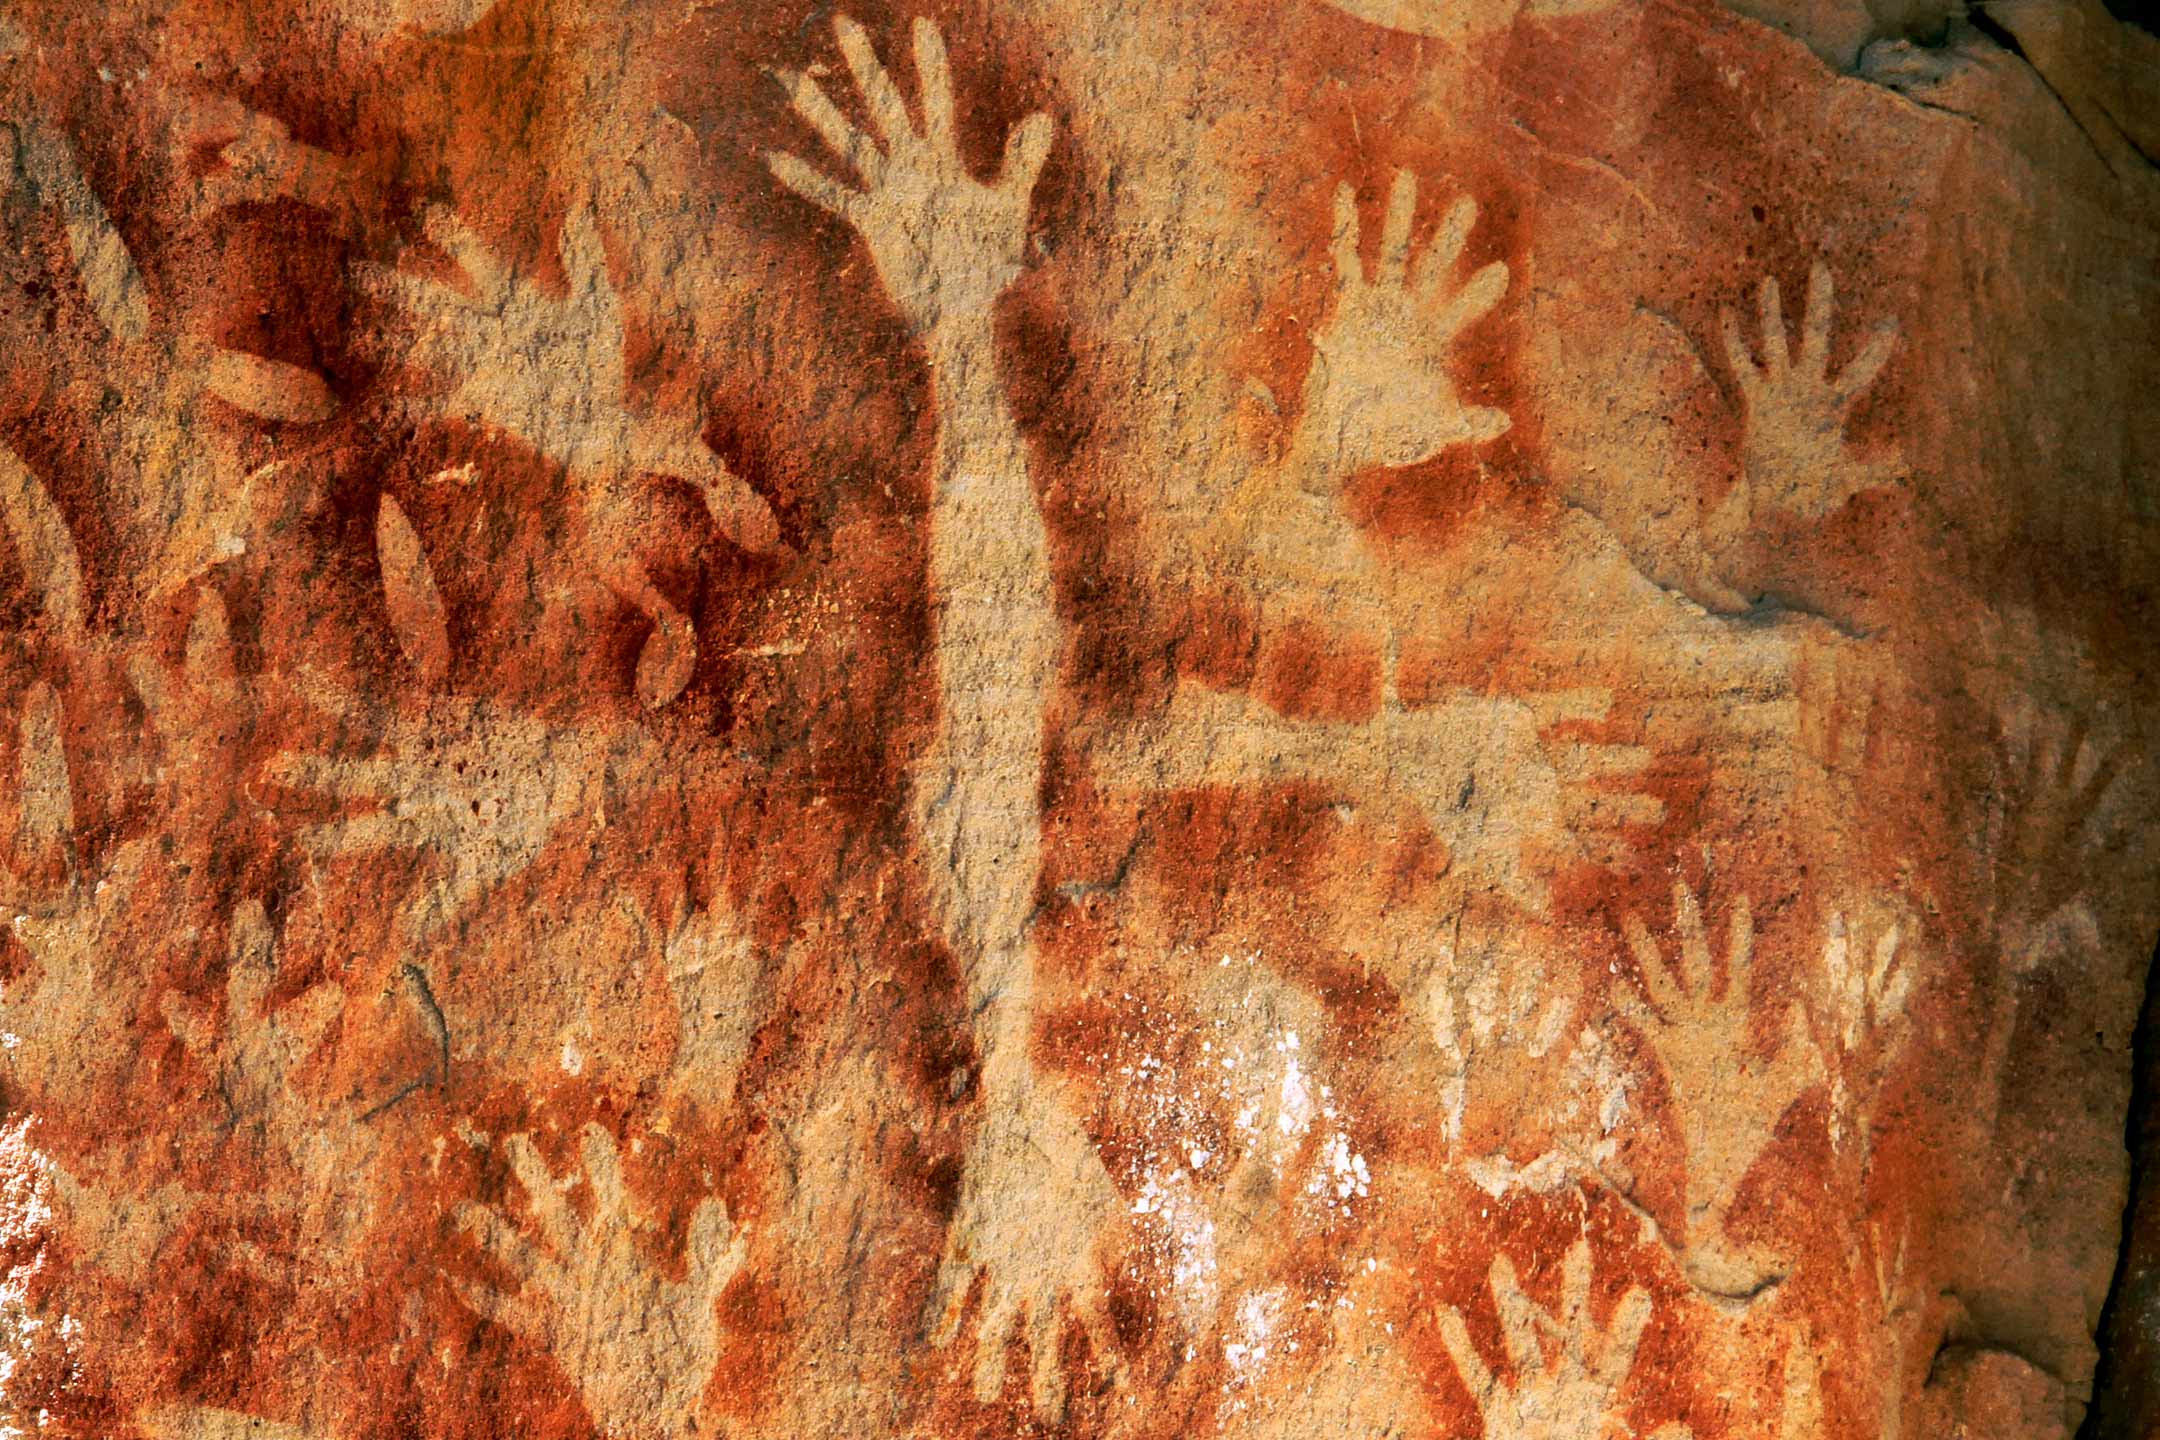 ancient-hands-cave-art2160